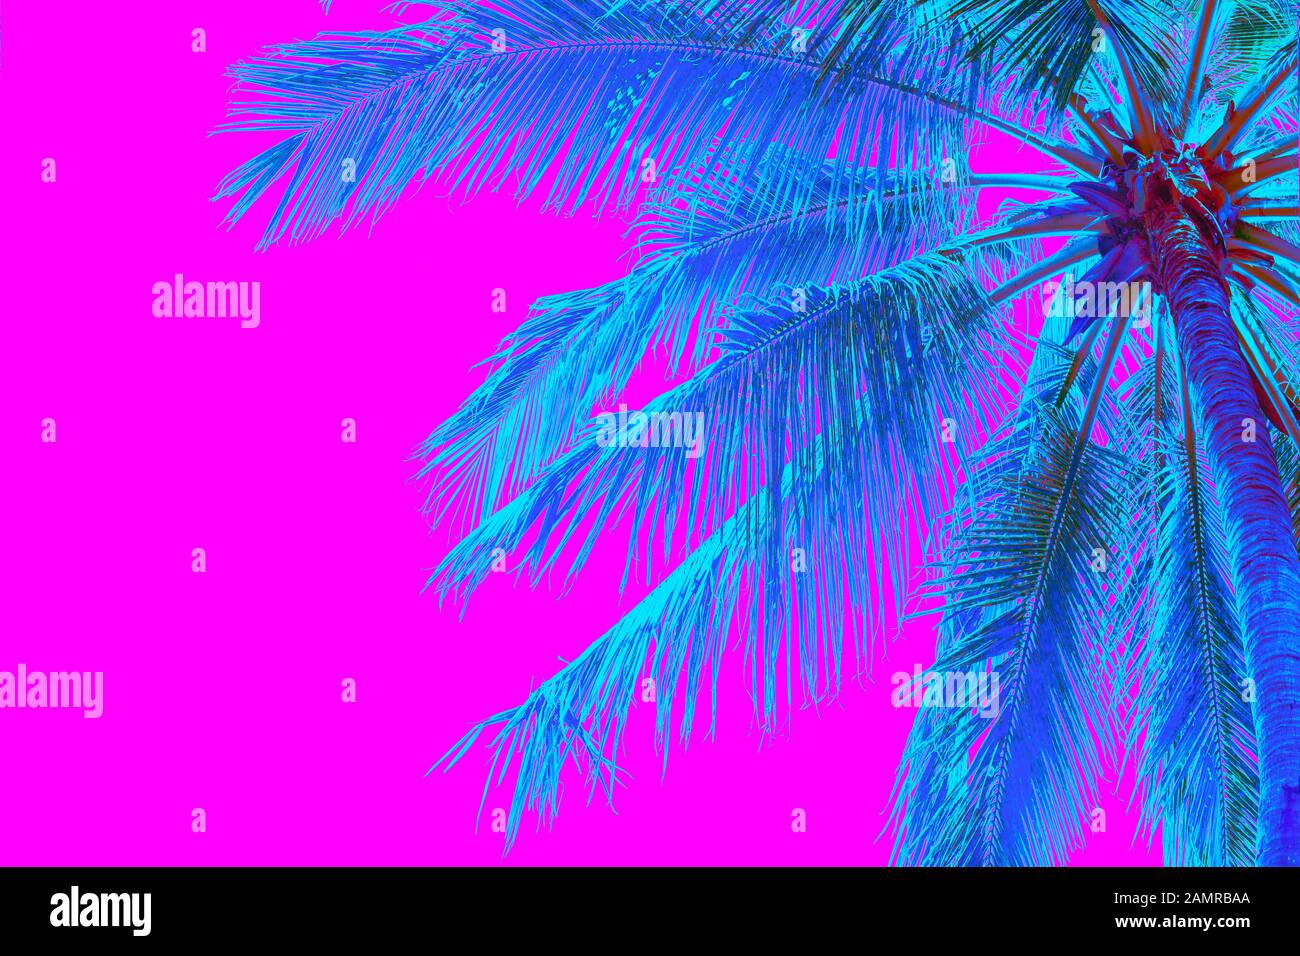 palmier de couleur néon sur fond rose Banque D'Images